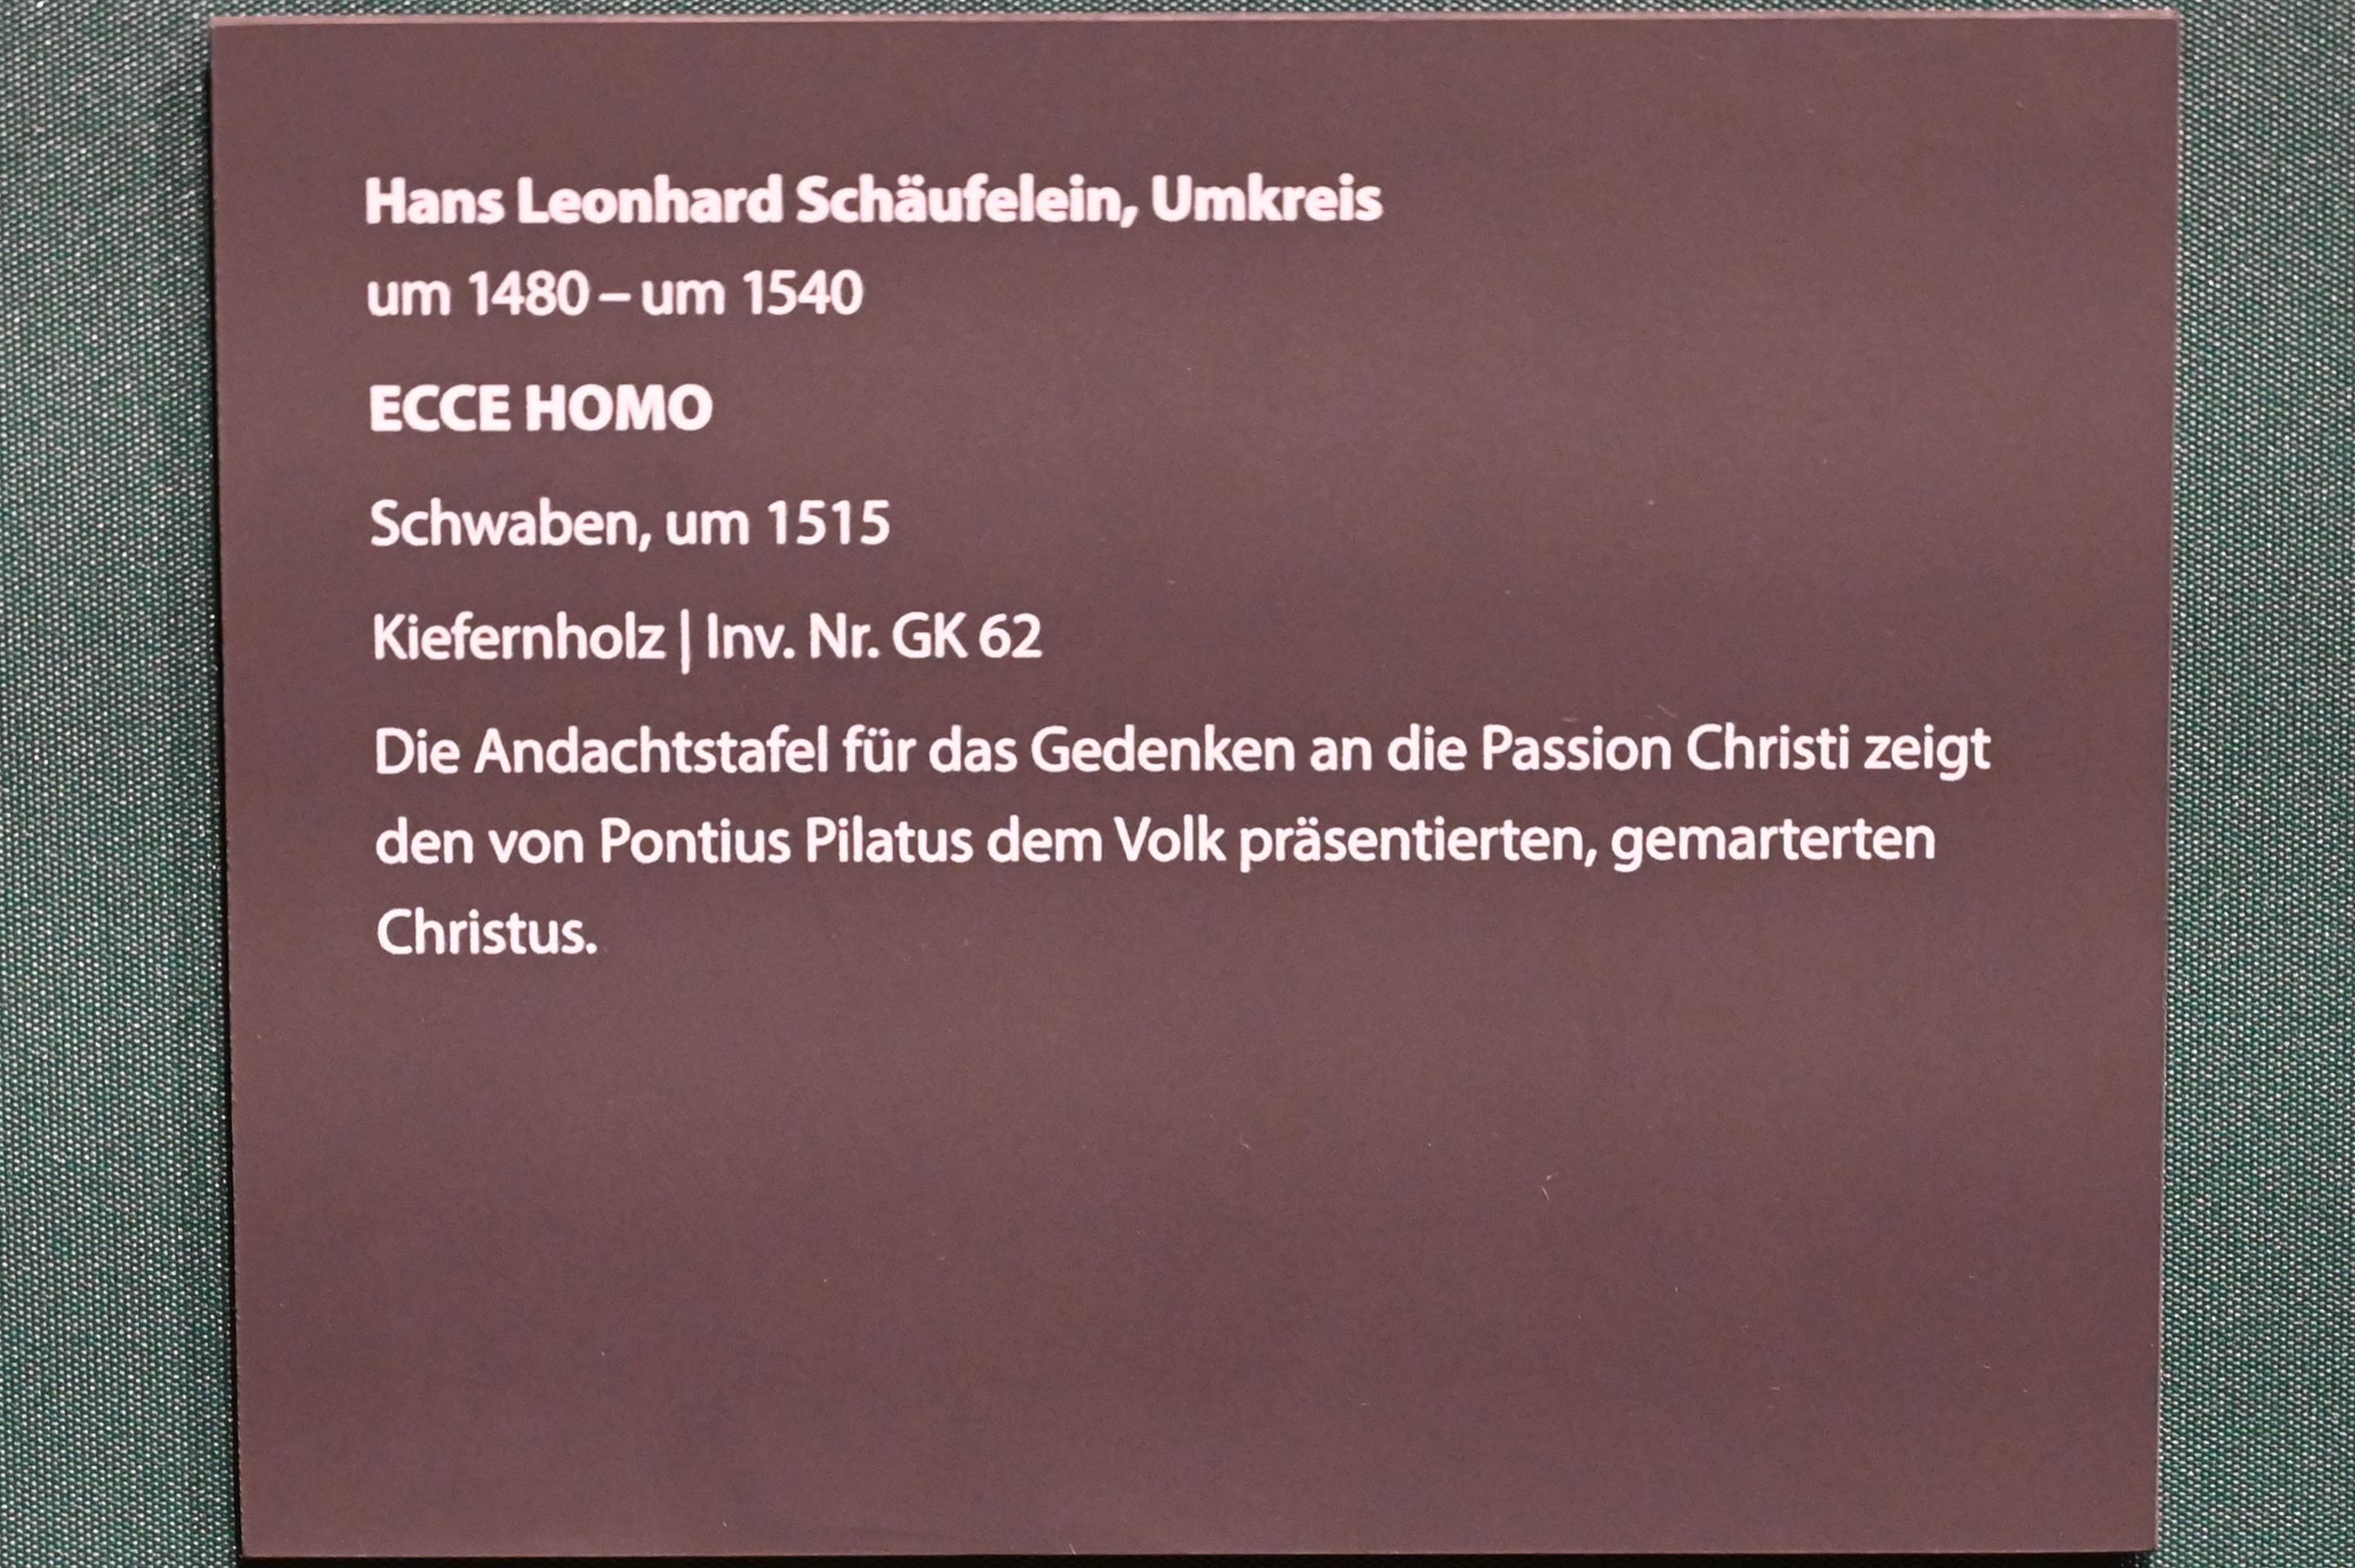 Hans Schäufelein (Umkreis) (1515), Ecce Homo, Darmstadt, Hessisches Landesmuseum, Saal 13, um 1515, Bild 2/2